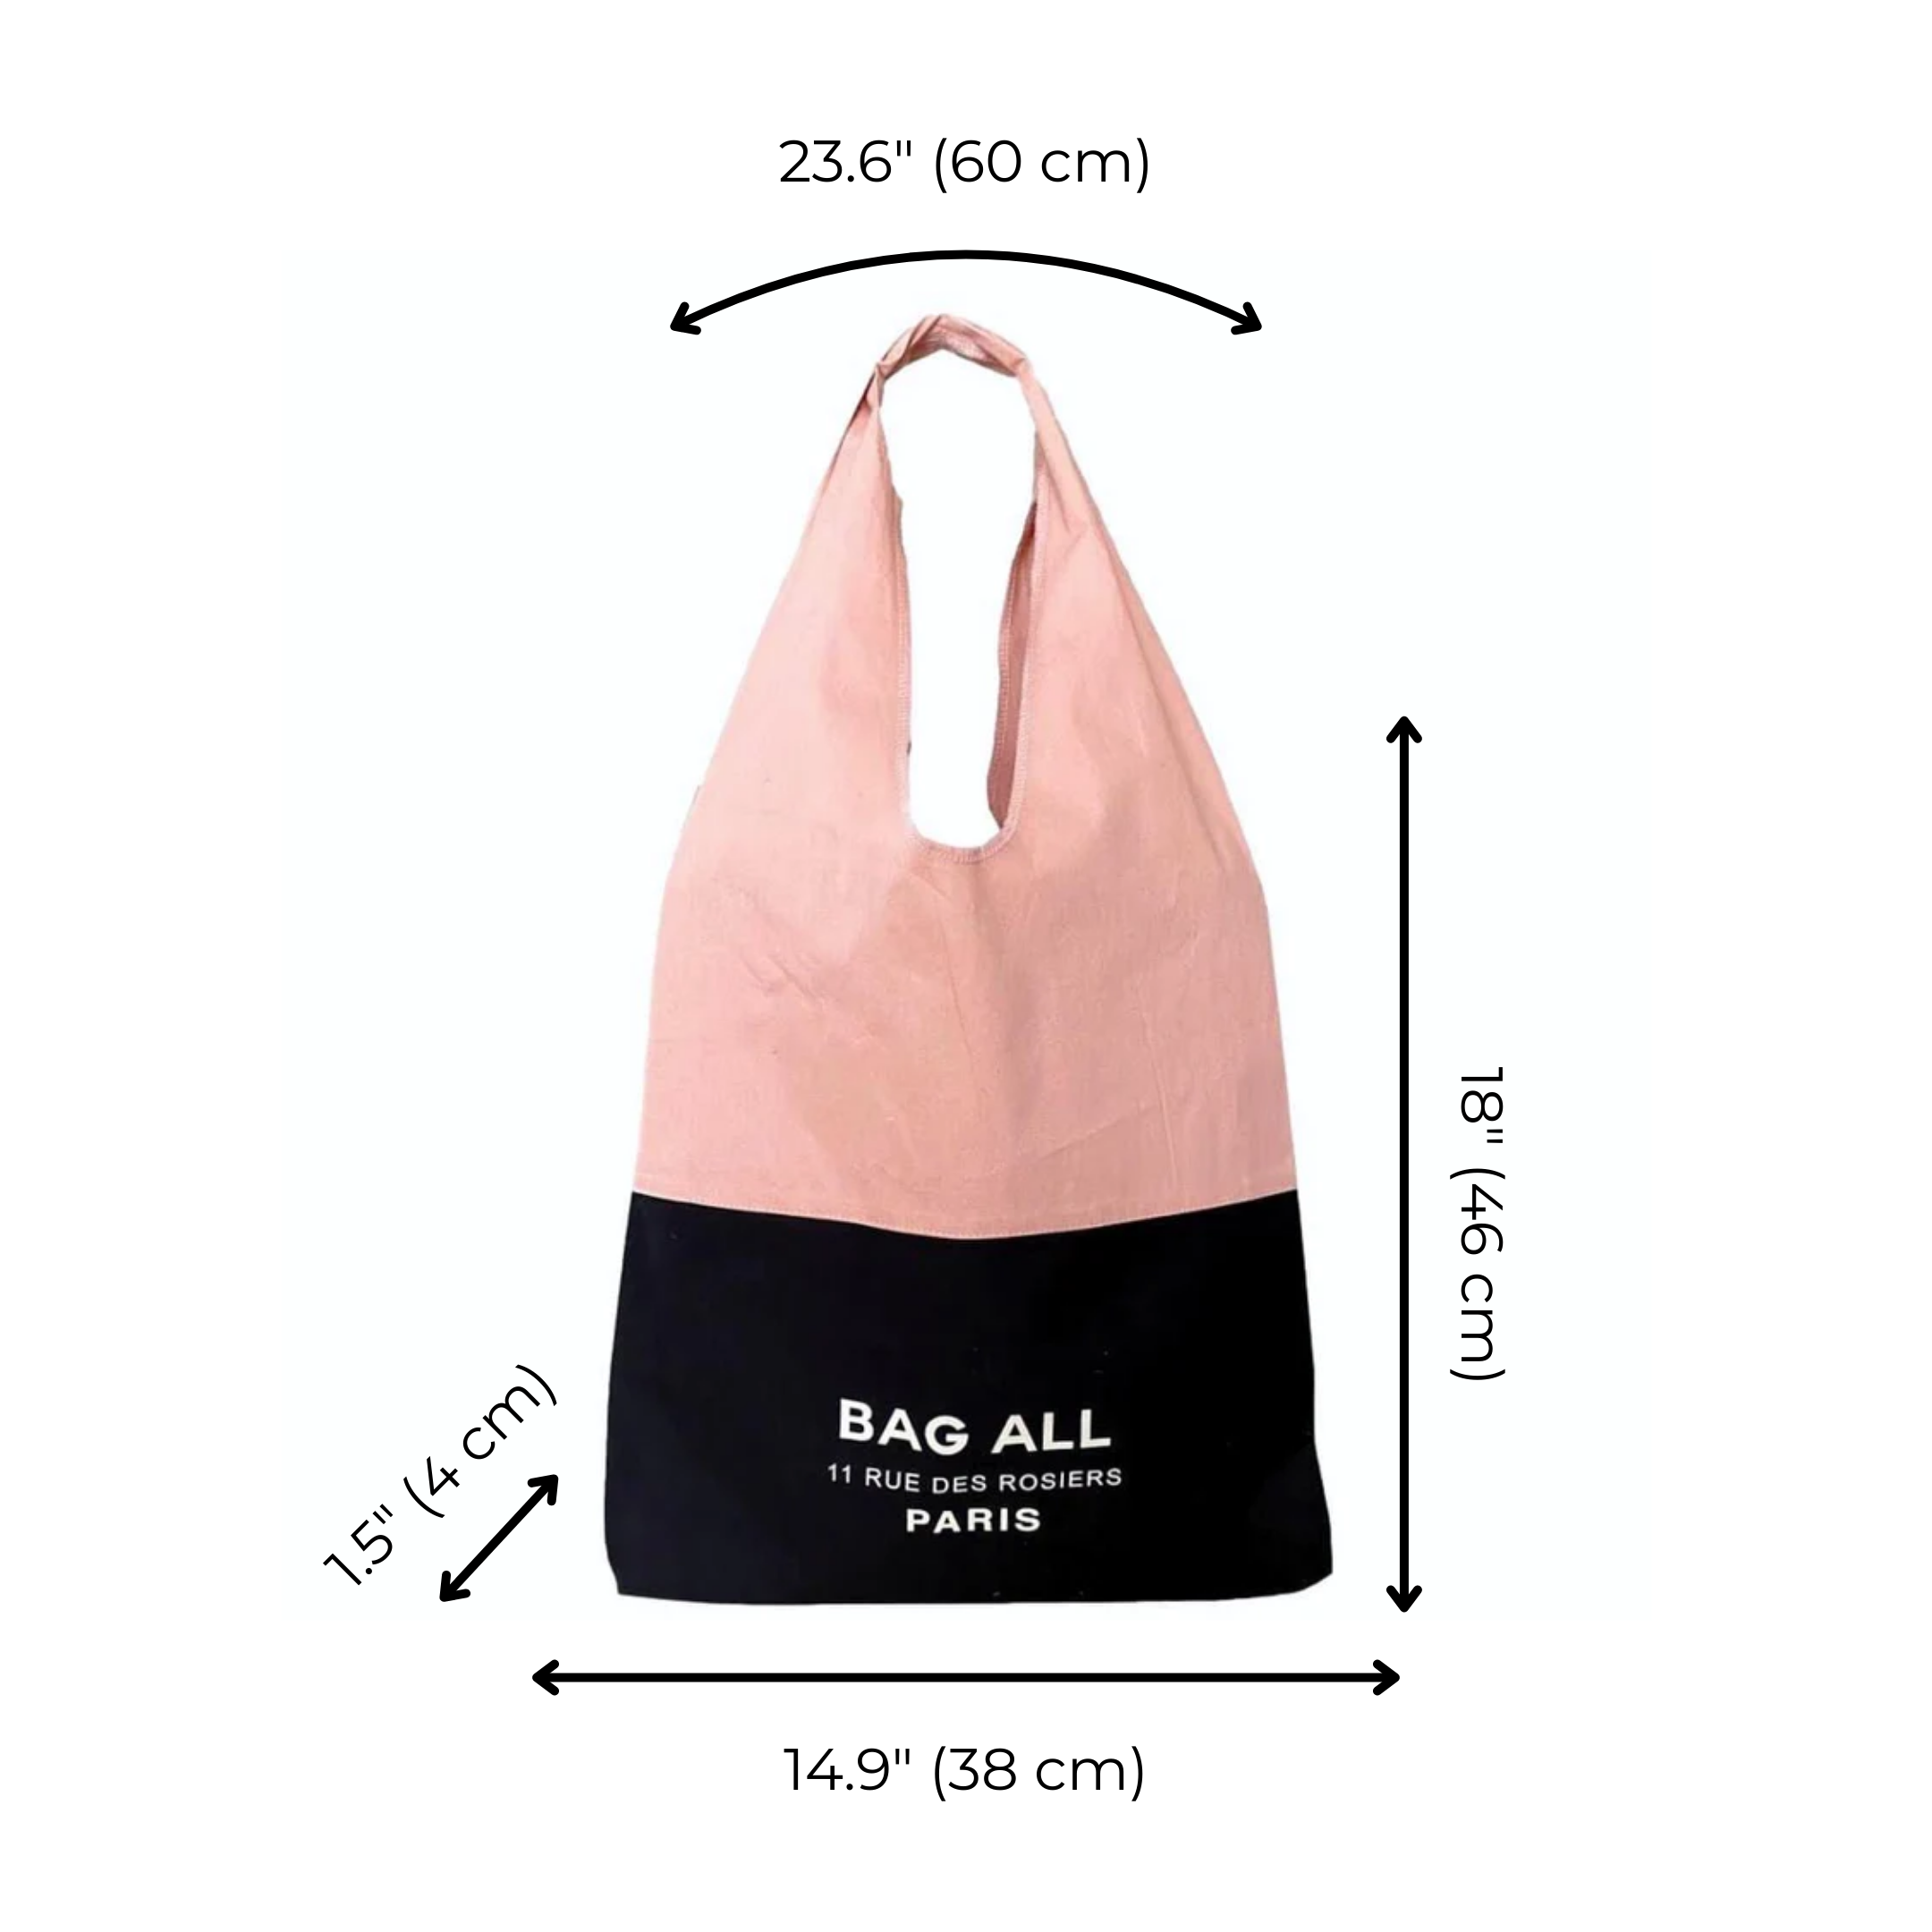 Bag-all Two Tone Tote Bag Paris, Pink/Black | Bag-all